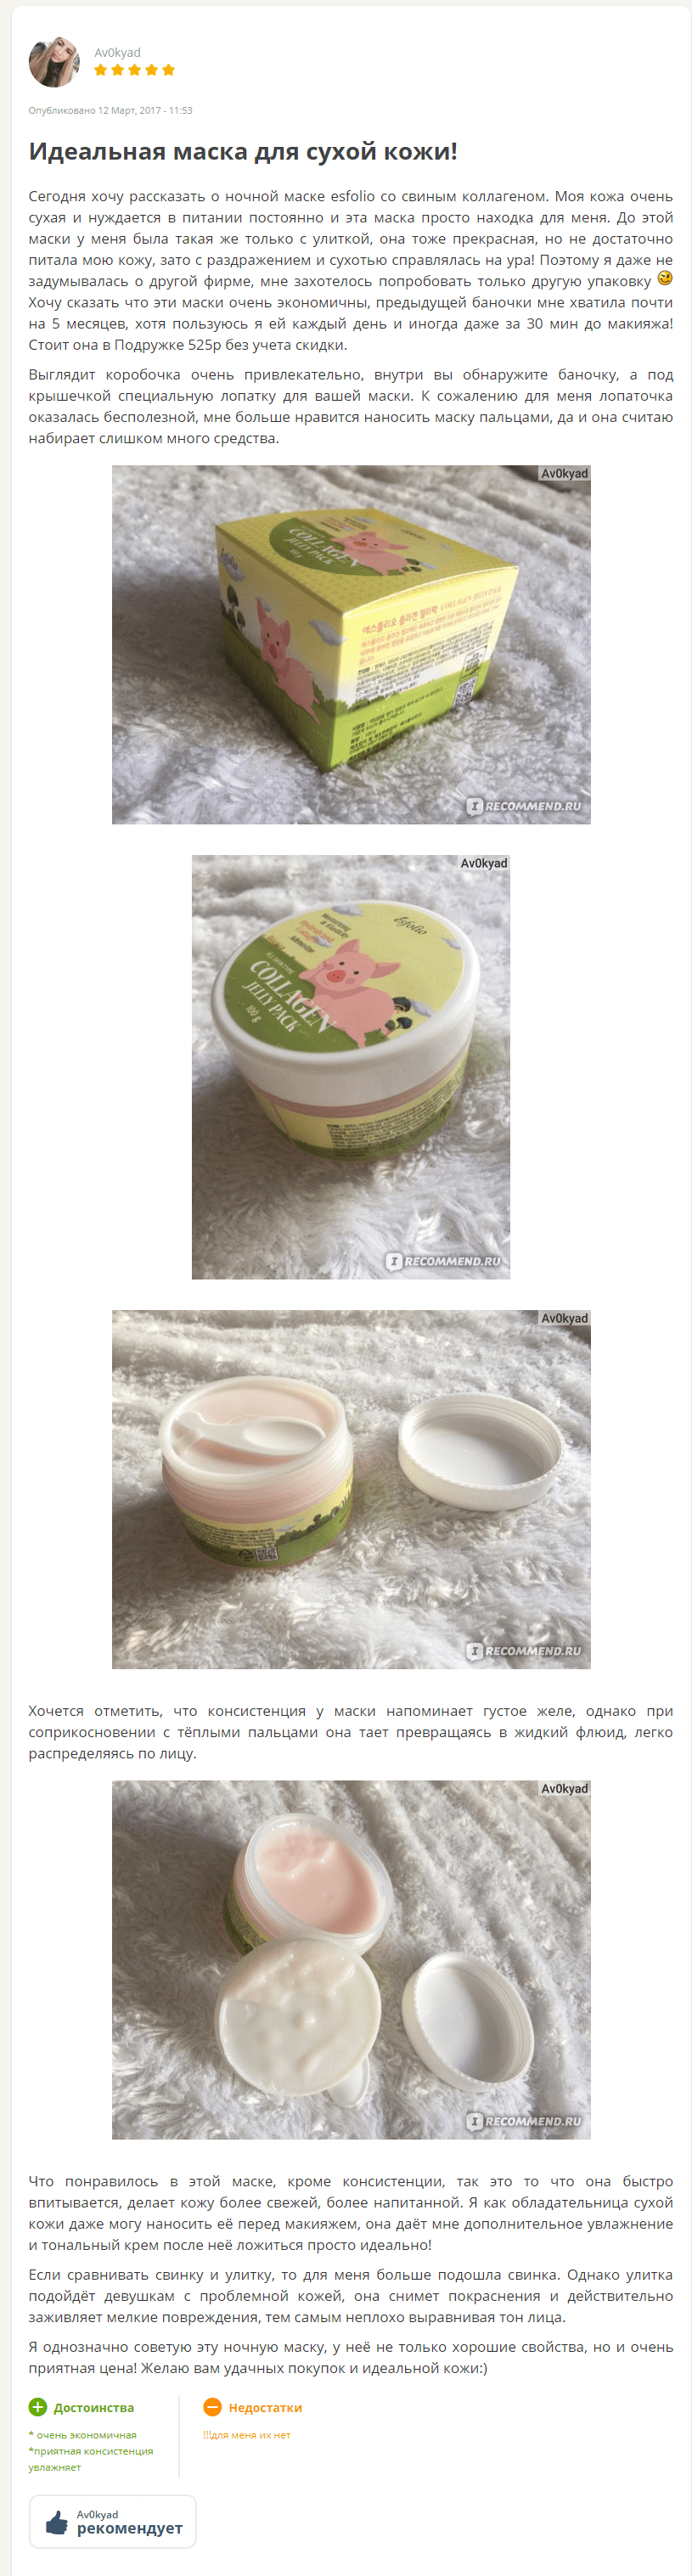 esfolio collagen jelly pack отзыв3-min